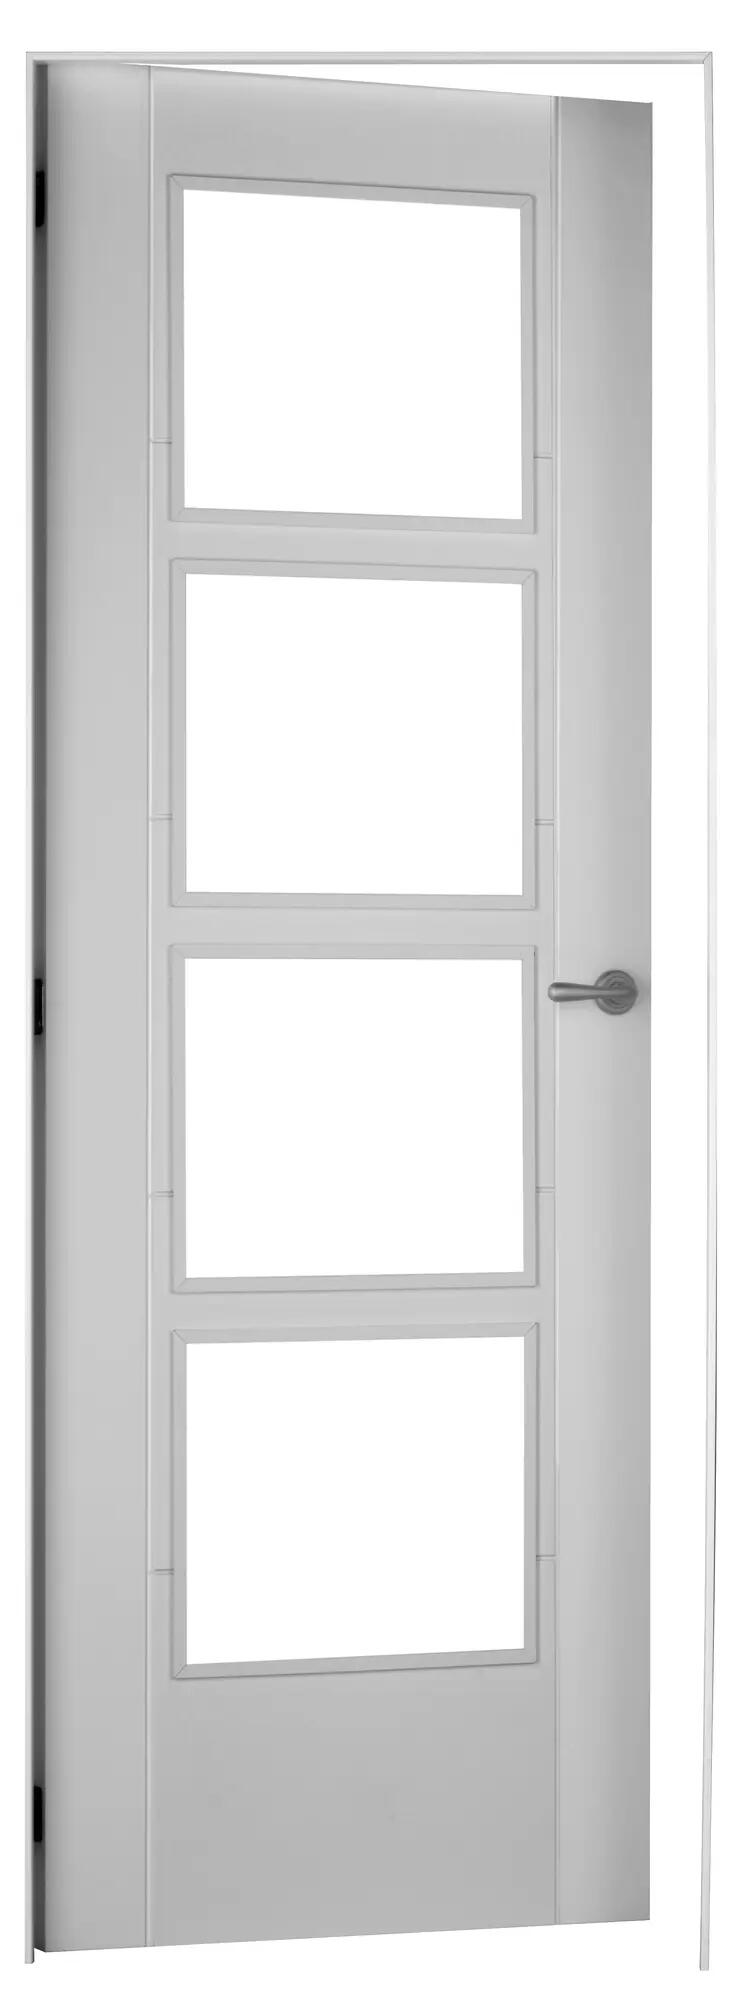 Puerta noruega blanco apertura izquierda con cristal 72.5cm